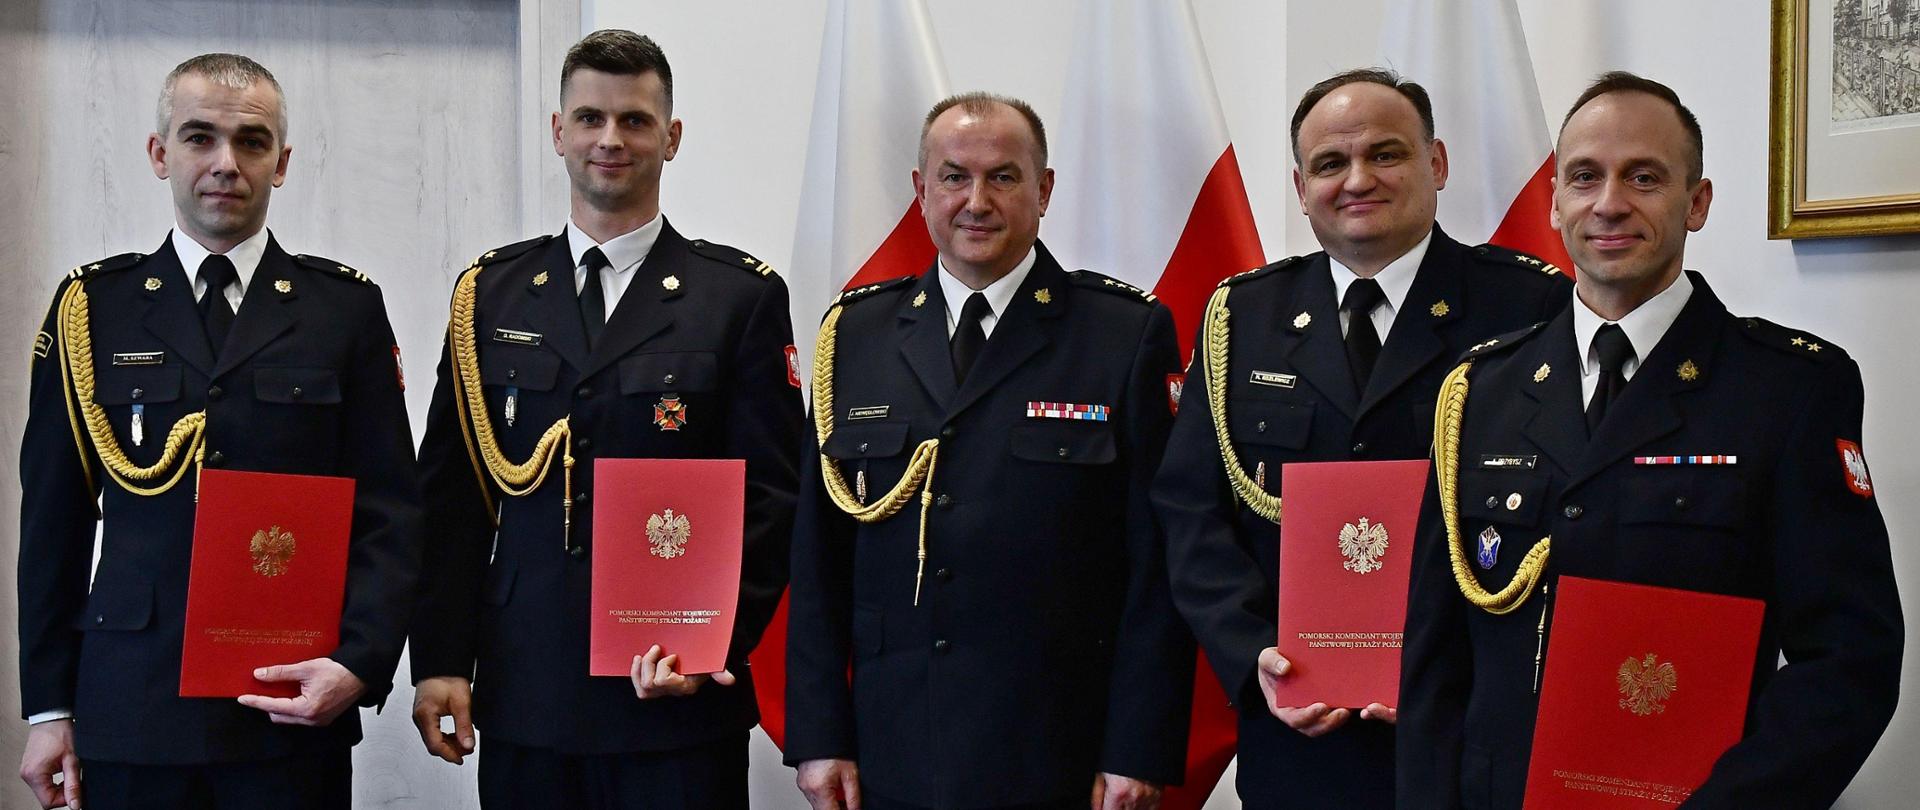 Dwóch strażaków w mundurach wyjściowych ze sznurem stoi obok siebie mężczyzna w środku jest bez teczki za nimi ustawione są trzy flagi Polski wisi obraz oraz znajdują się drzwi. 